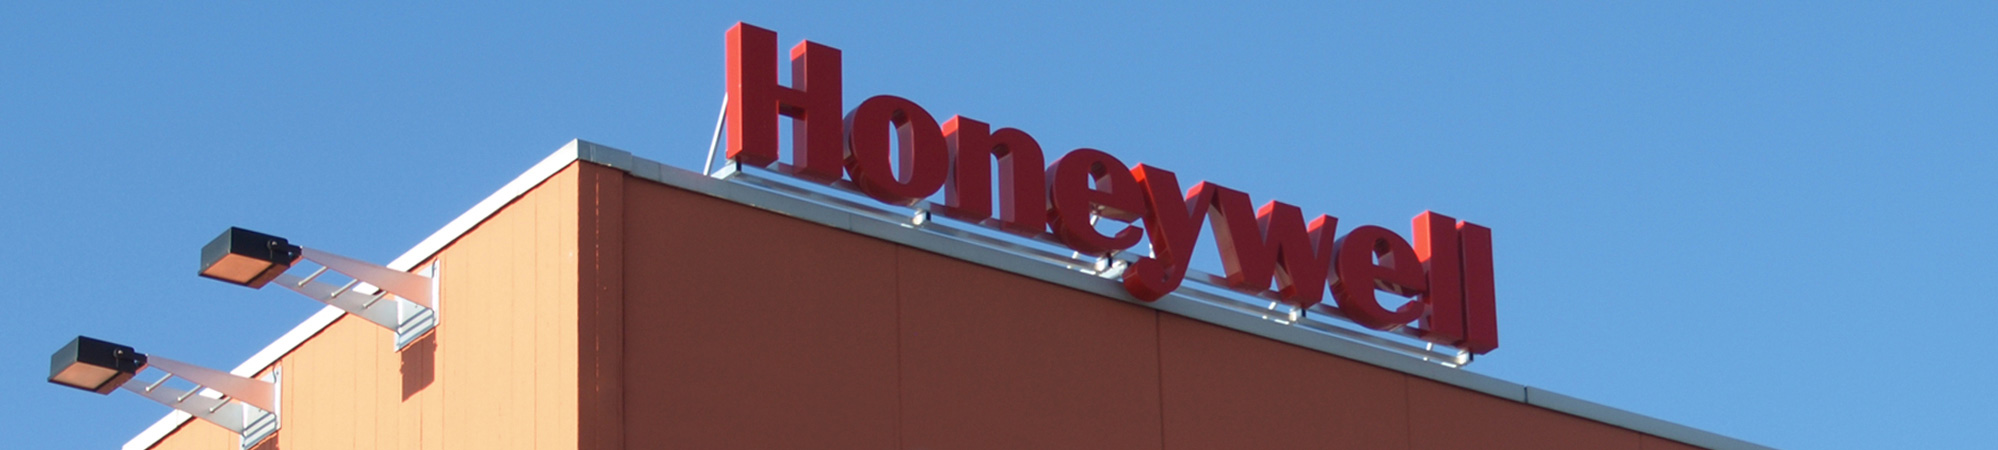 Honeywell-Logo auf dem Firmengebäude in Kassel